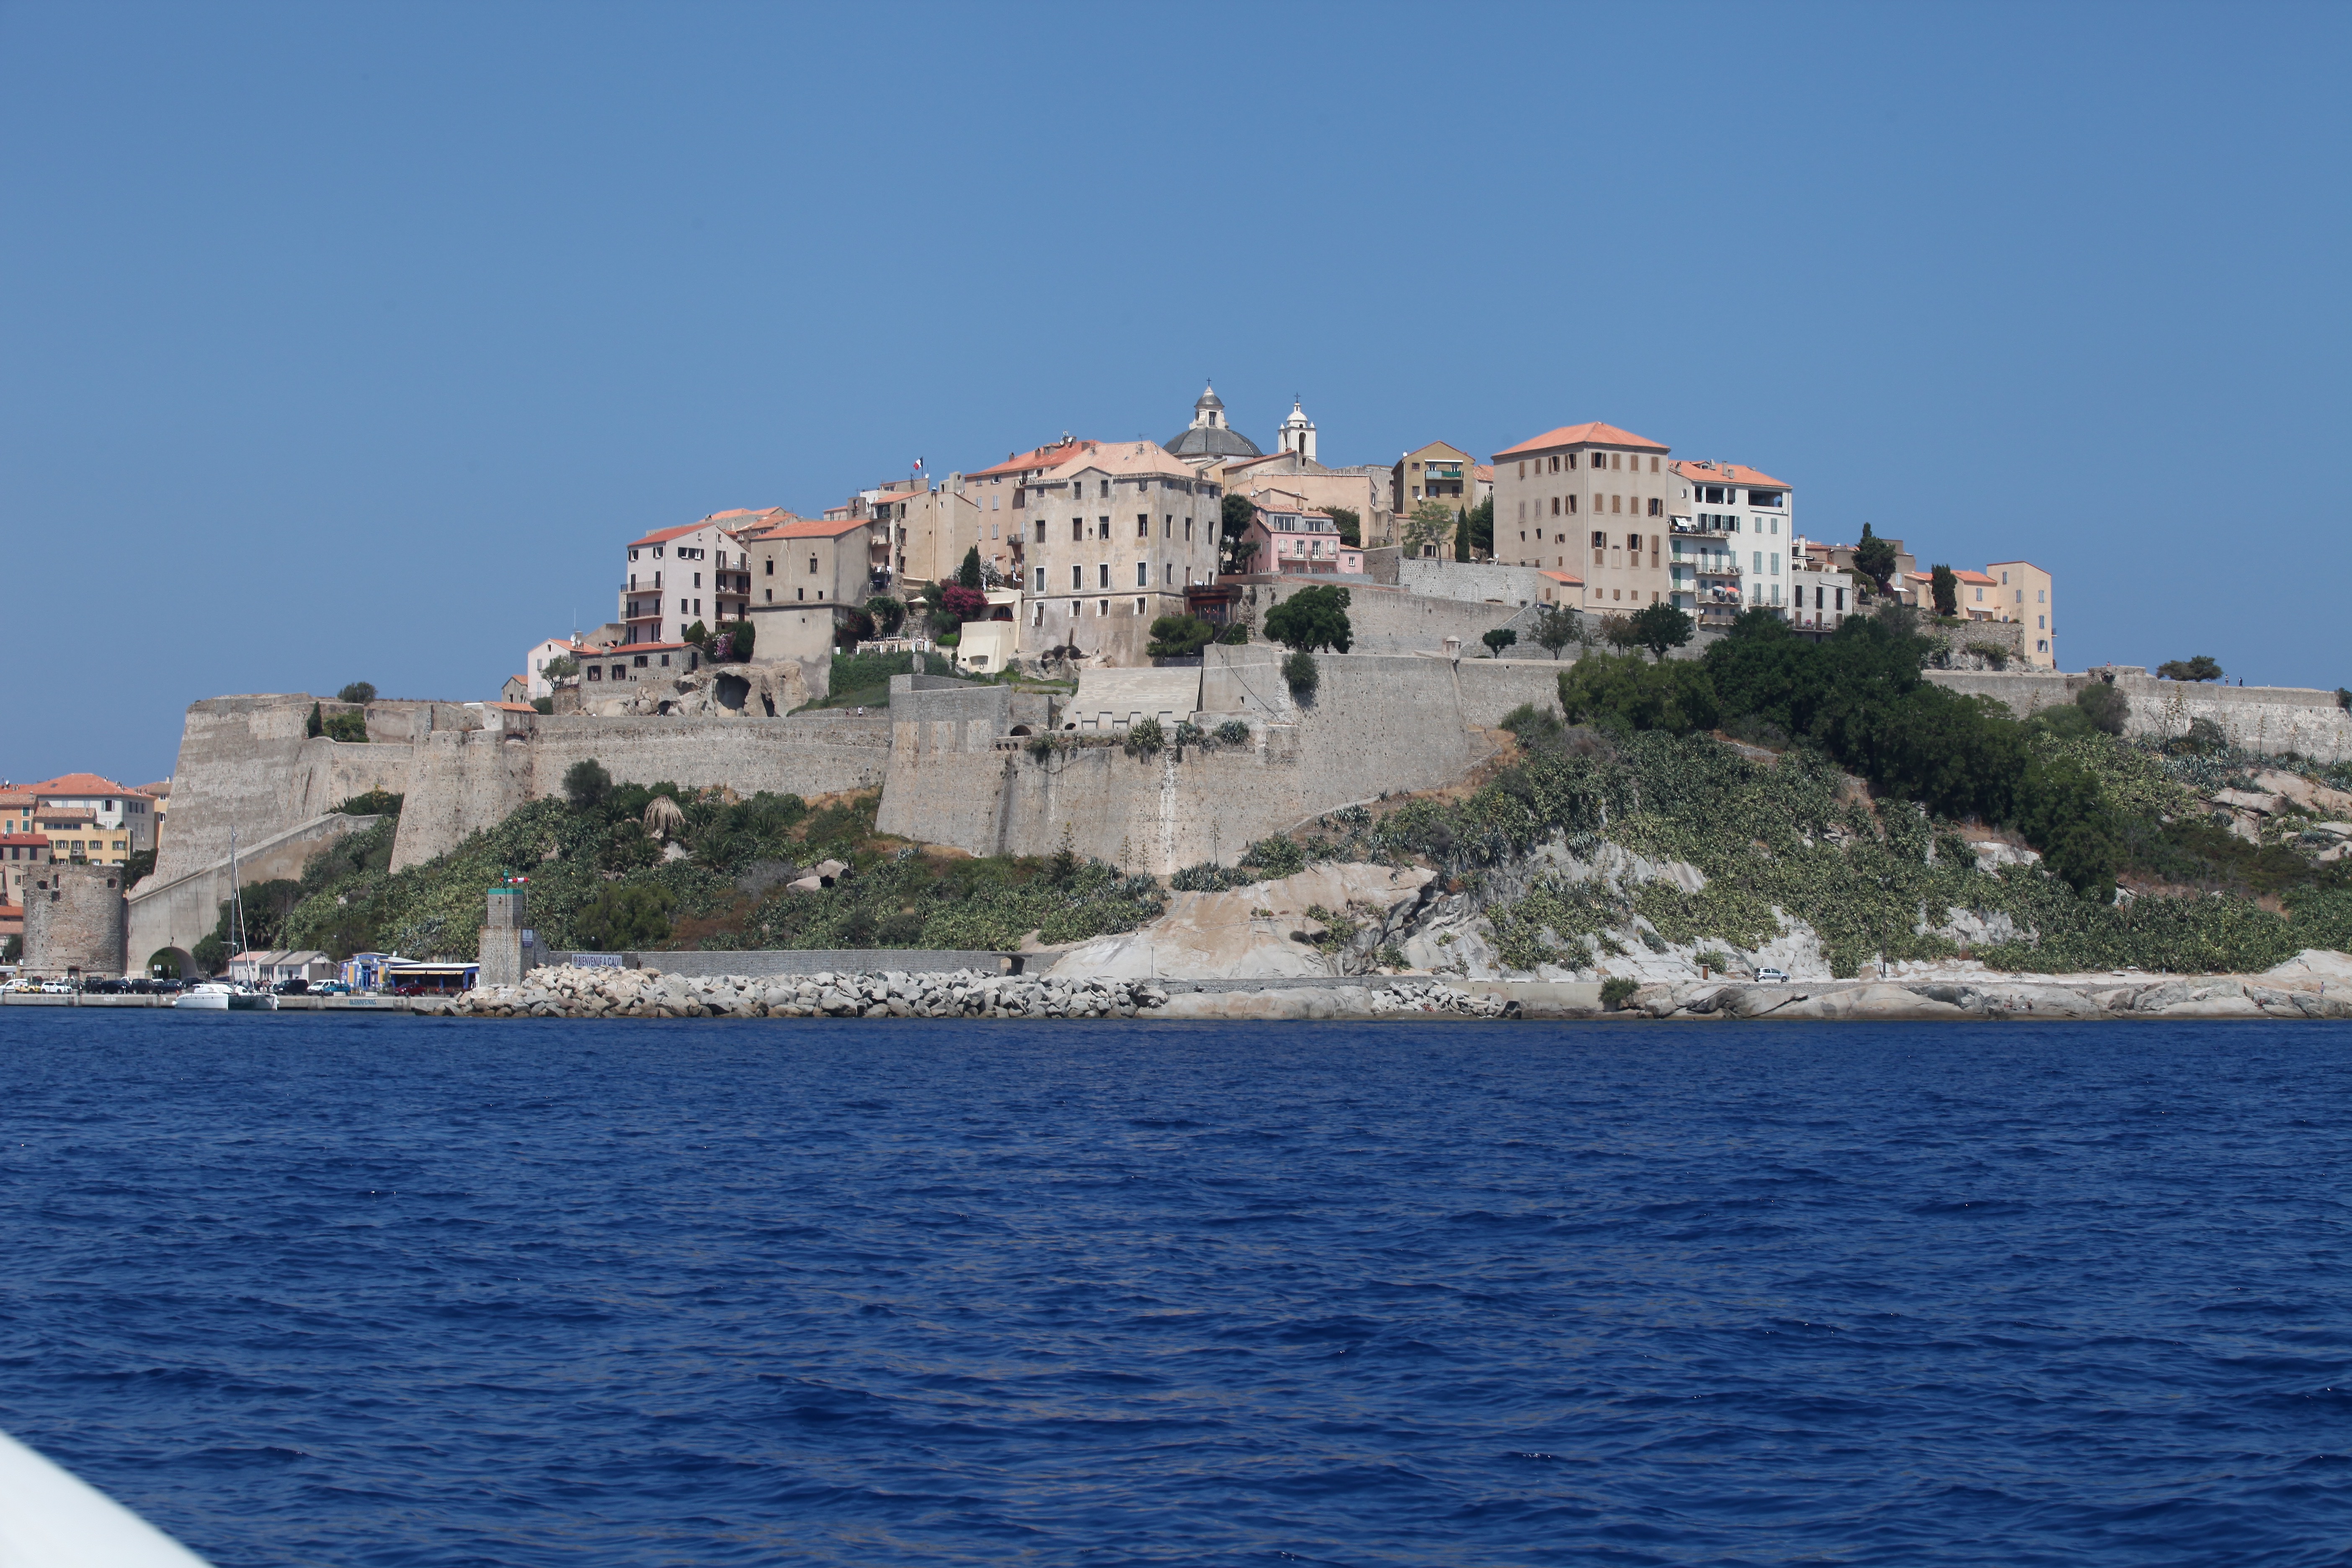 Vue de la mer, du nord-est, la Citadelle de Calvi semble veiller sur le port.